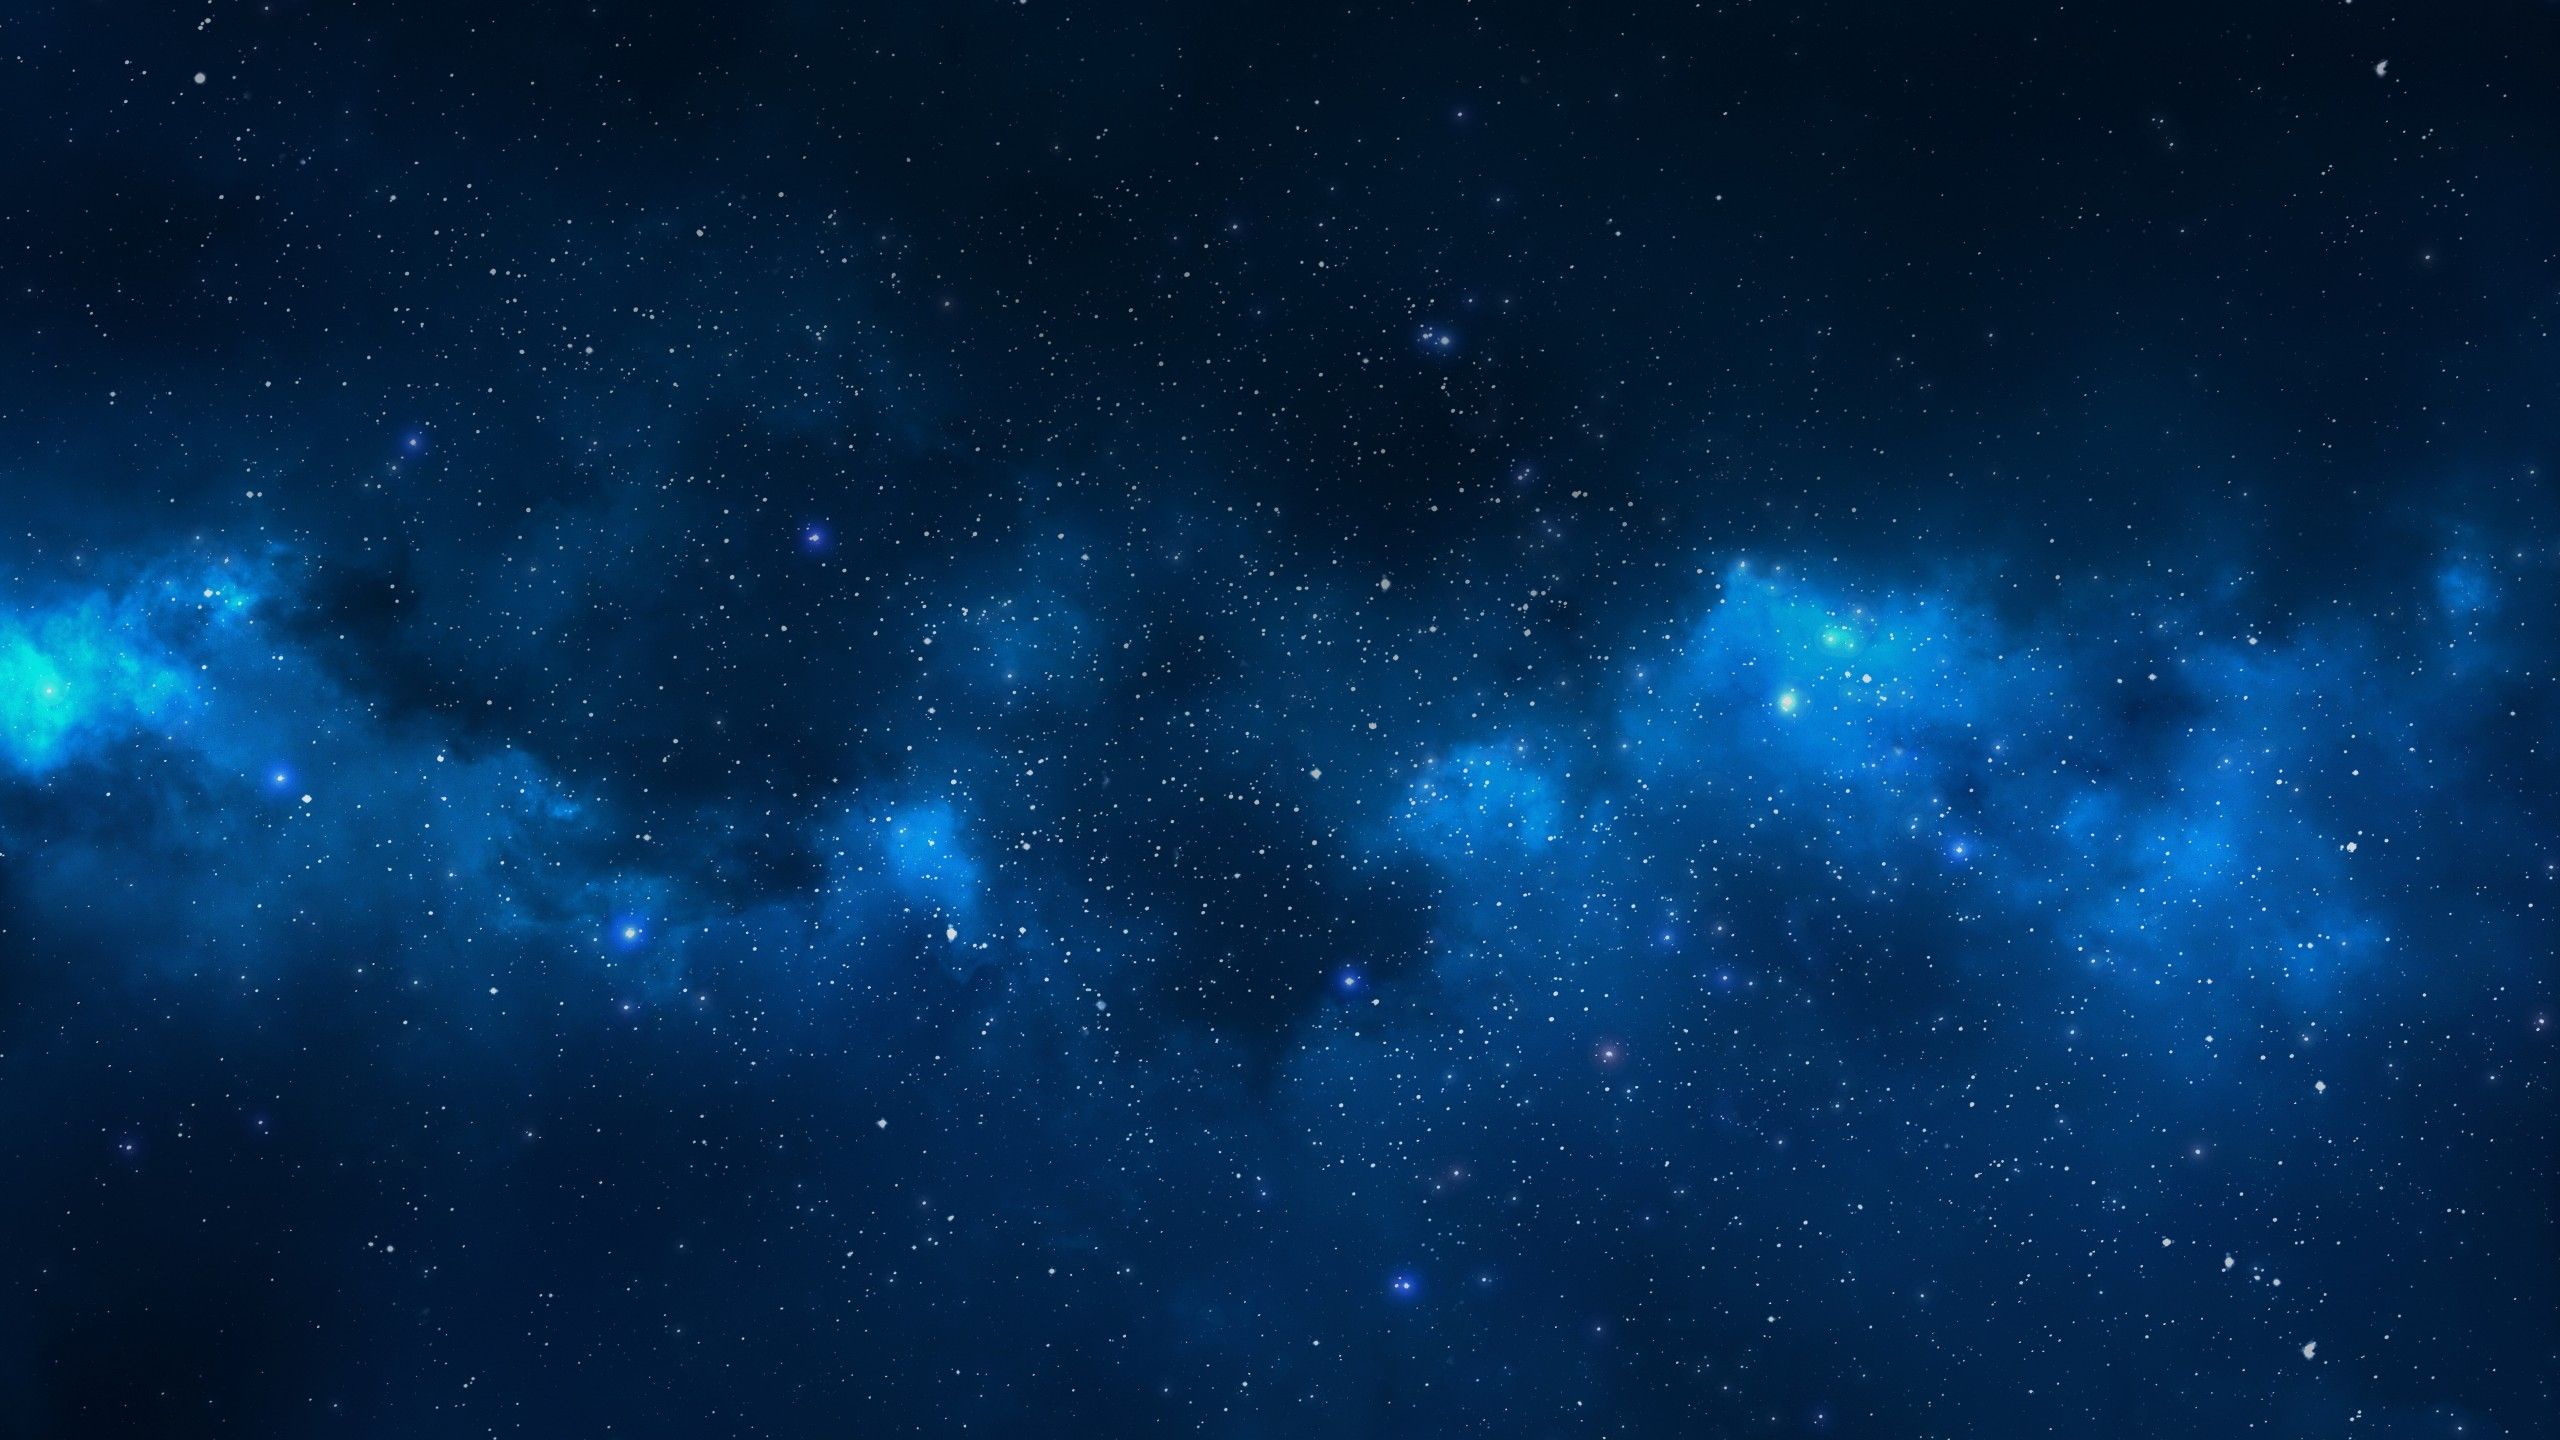 Tận hưởng sự phấn khích và tràn đầy năng lượng với hình nền laptop Galaxy màu xanh ngầu này. Một chủ đề về sao chổi và các hình ảnh về vũ trụ sẽ giúp bạn thư giãn và tập trung hơn trong công việc và cuộc sống hằng ngày.